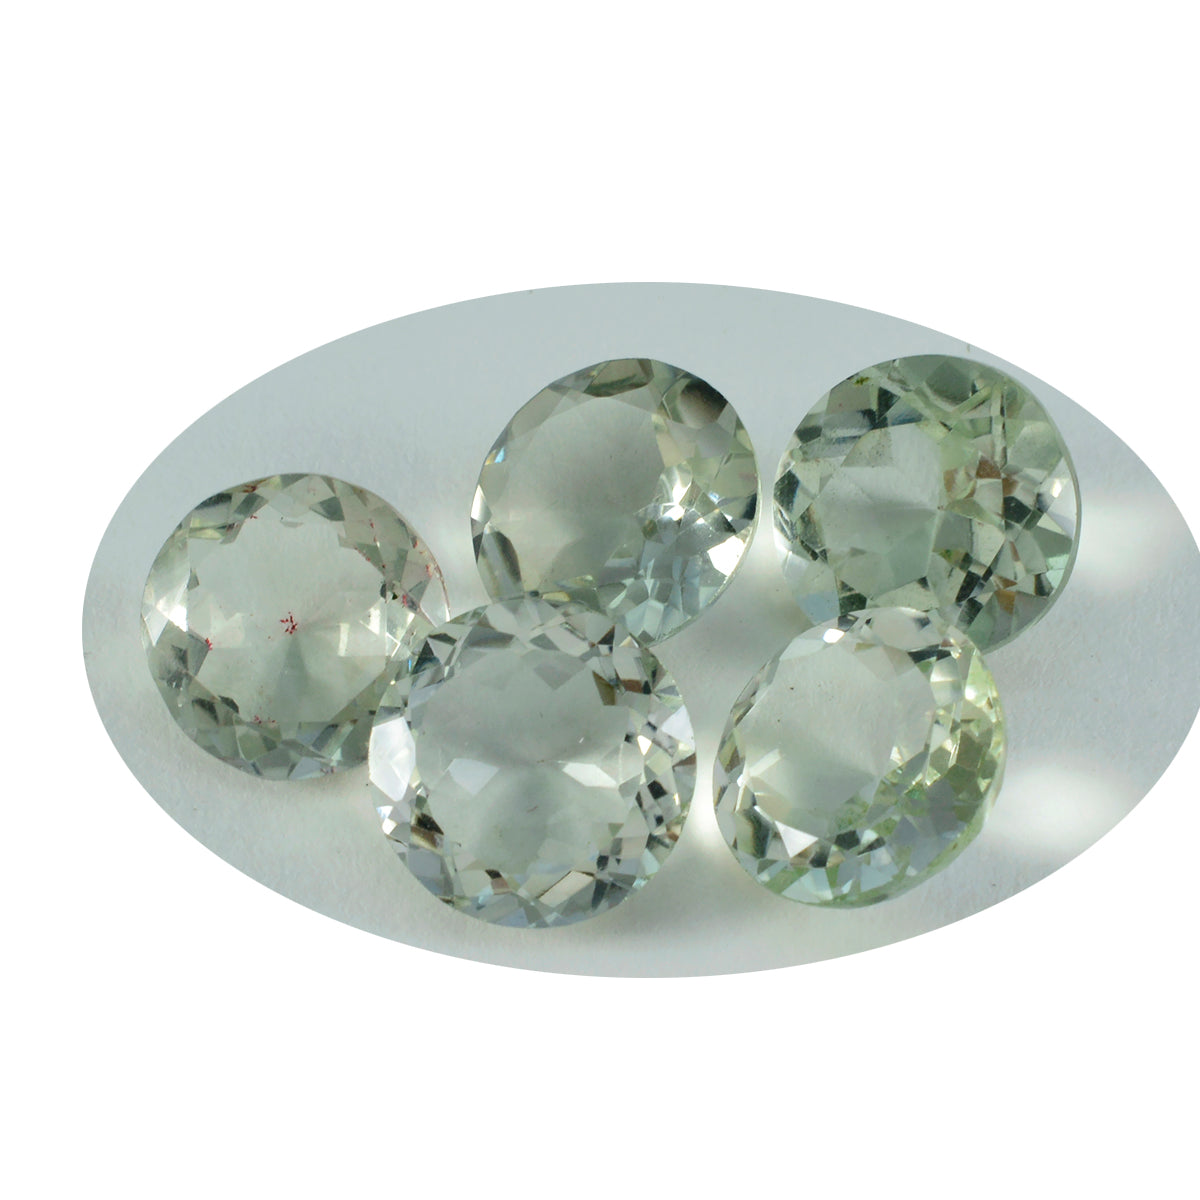 Riyogems 1PC Green Amethyst Faceted 15x15 mm Round Shape wonderful Quality Loose Gemstone